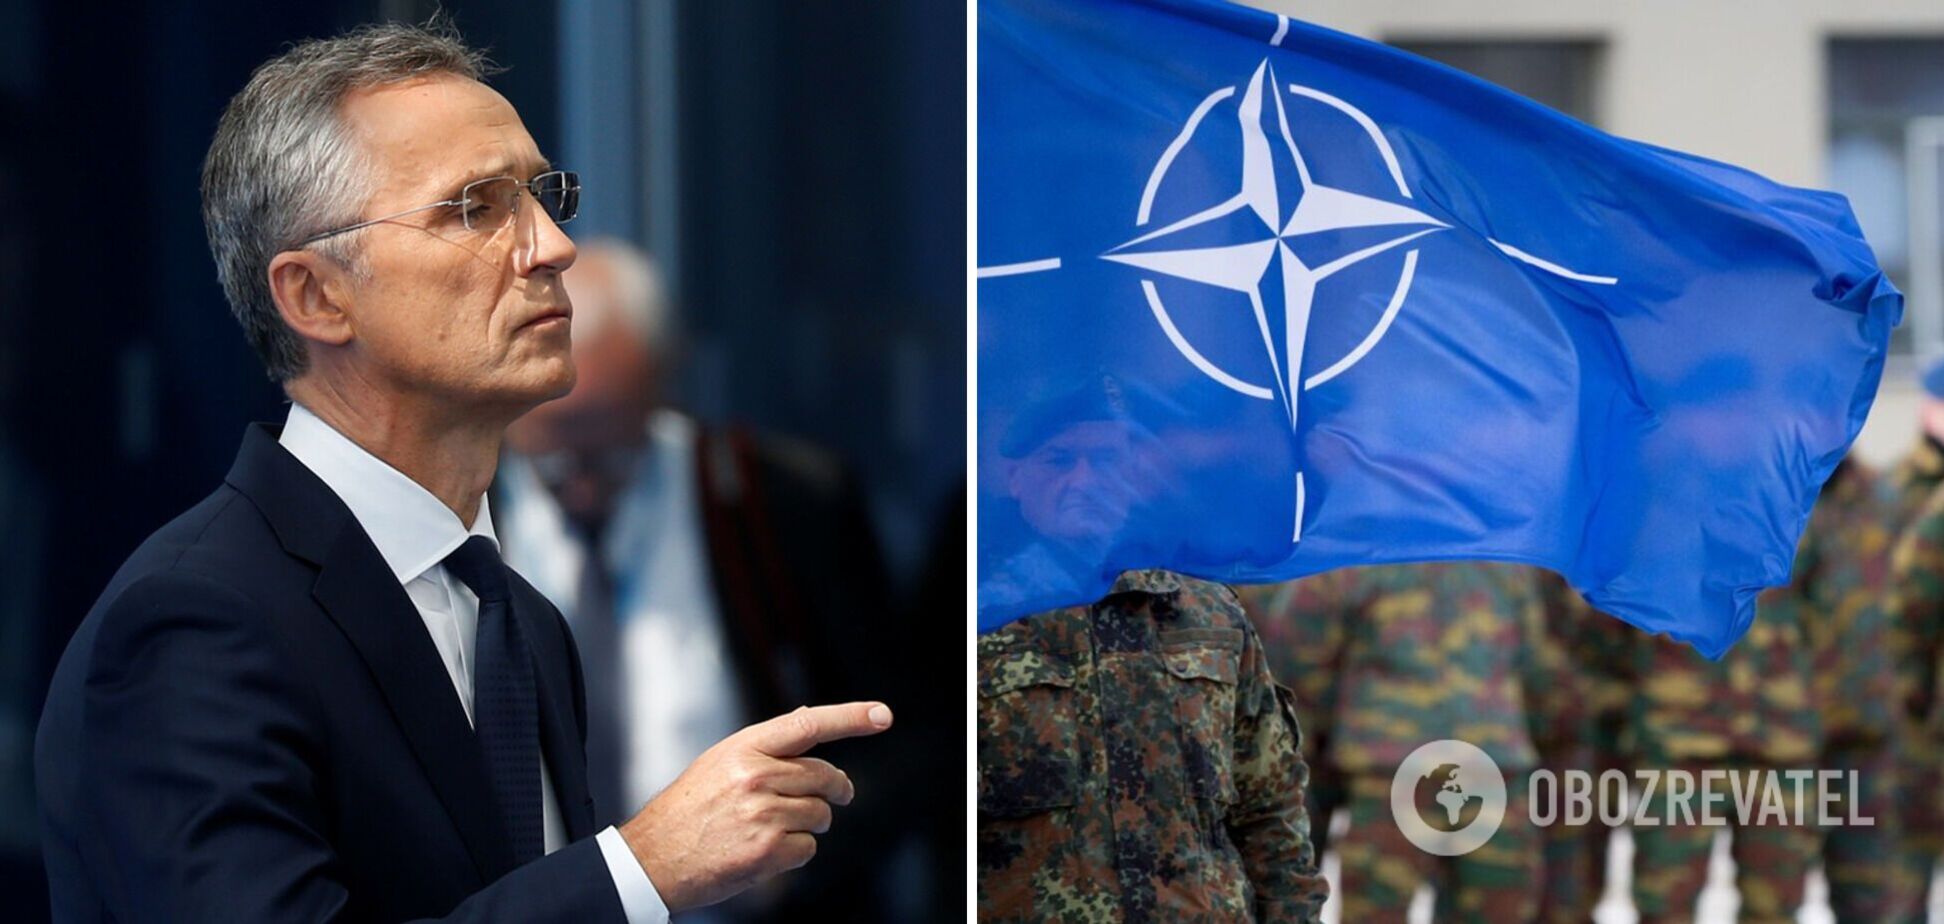 НАТО планує наростити військову присутність у Балтії для забезпечення безпеки Фінляндії та Швеції